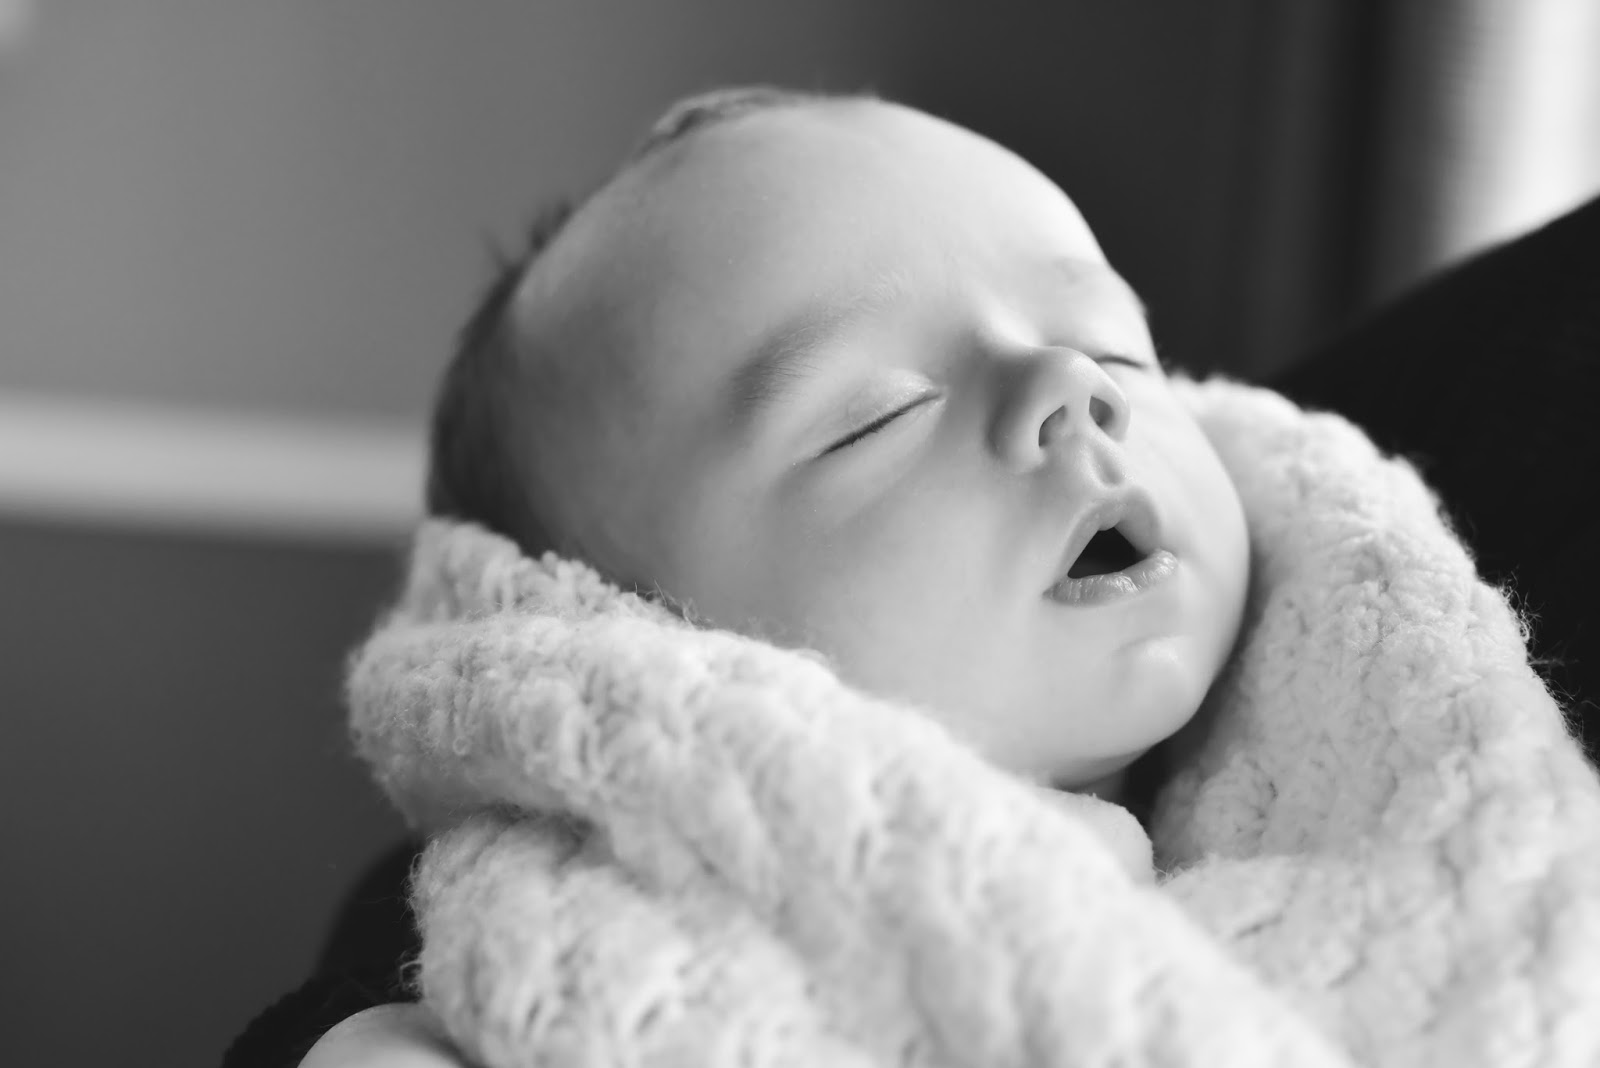 Utah Family & Newborn Photographer Heather Luczak